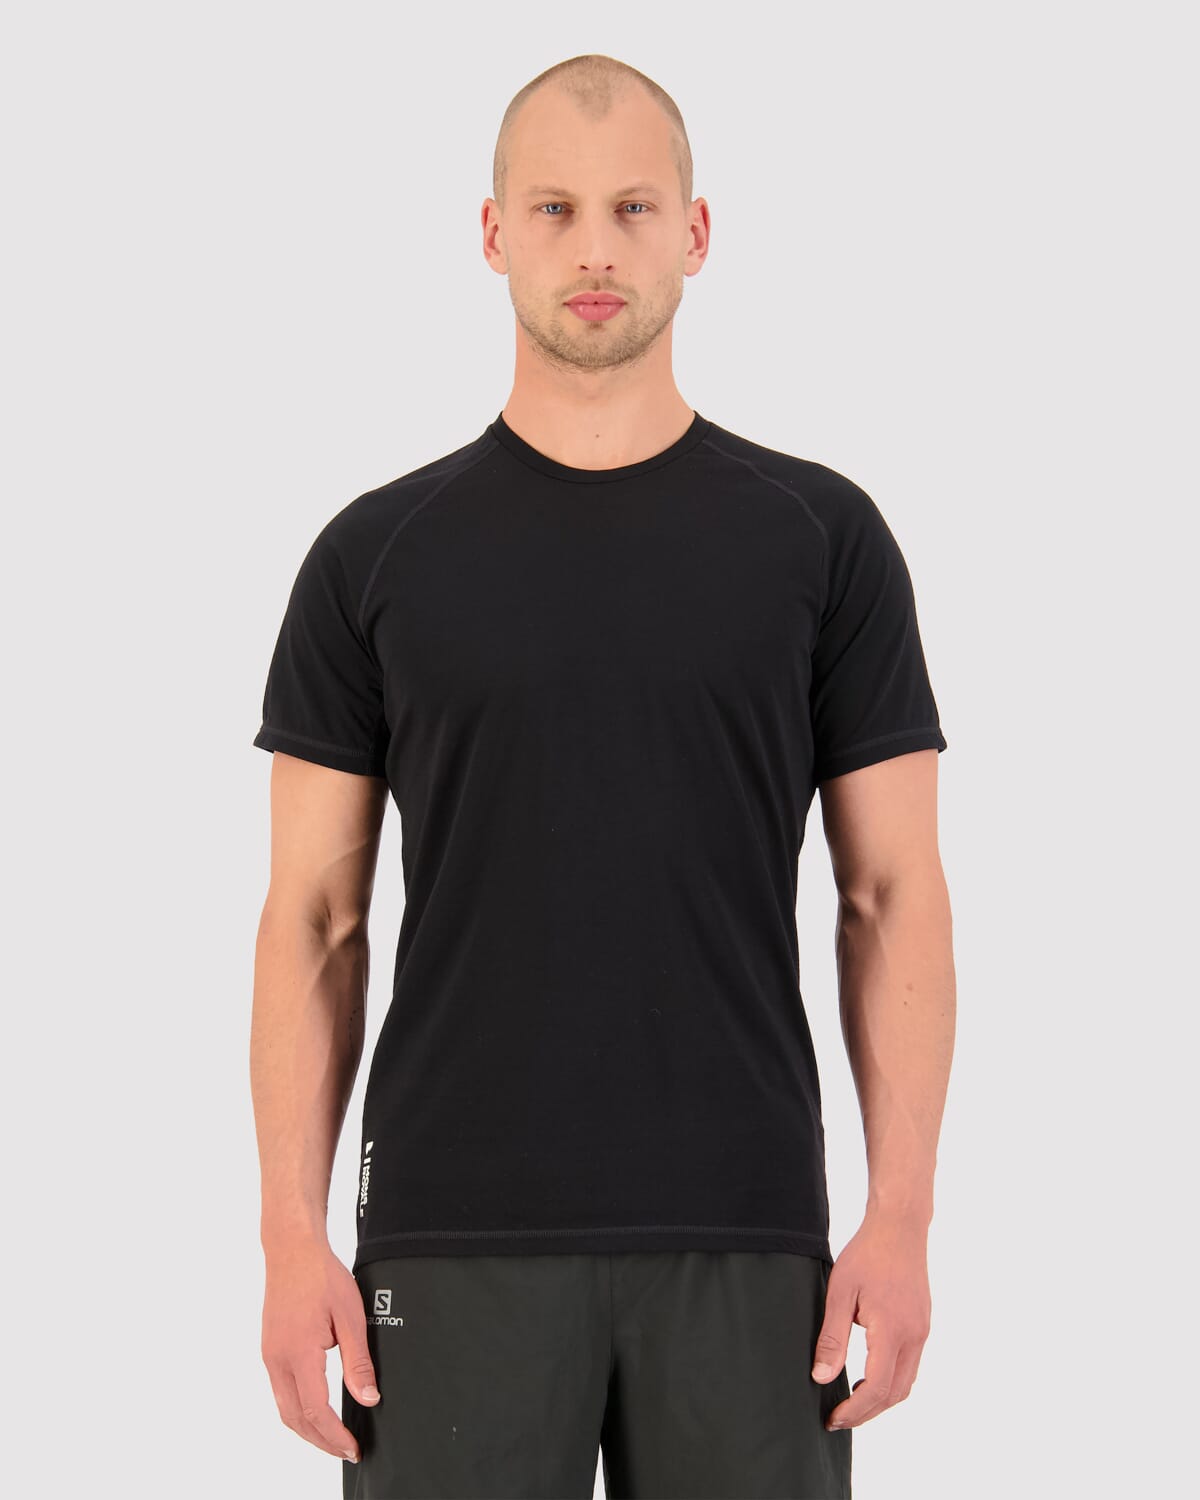 Temple Merino Air-Con T-Shirt - Black